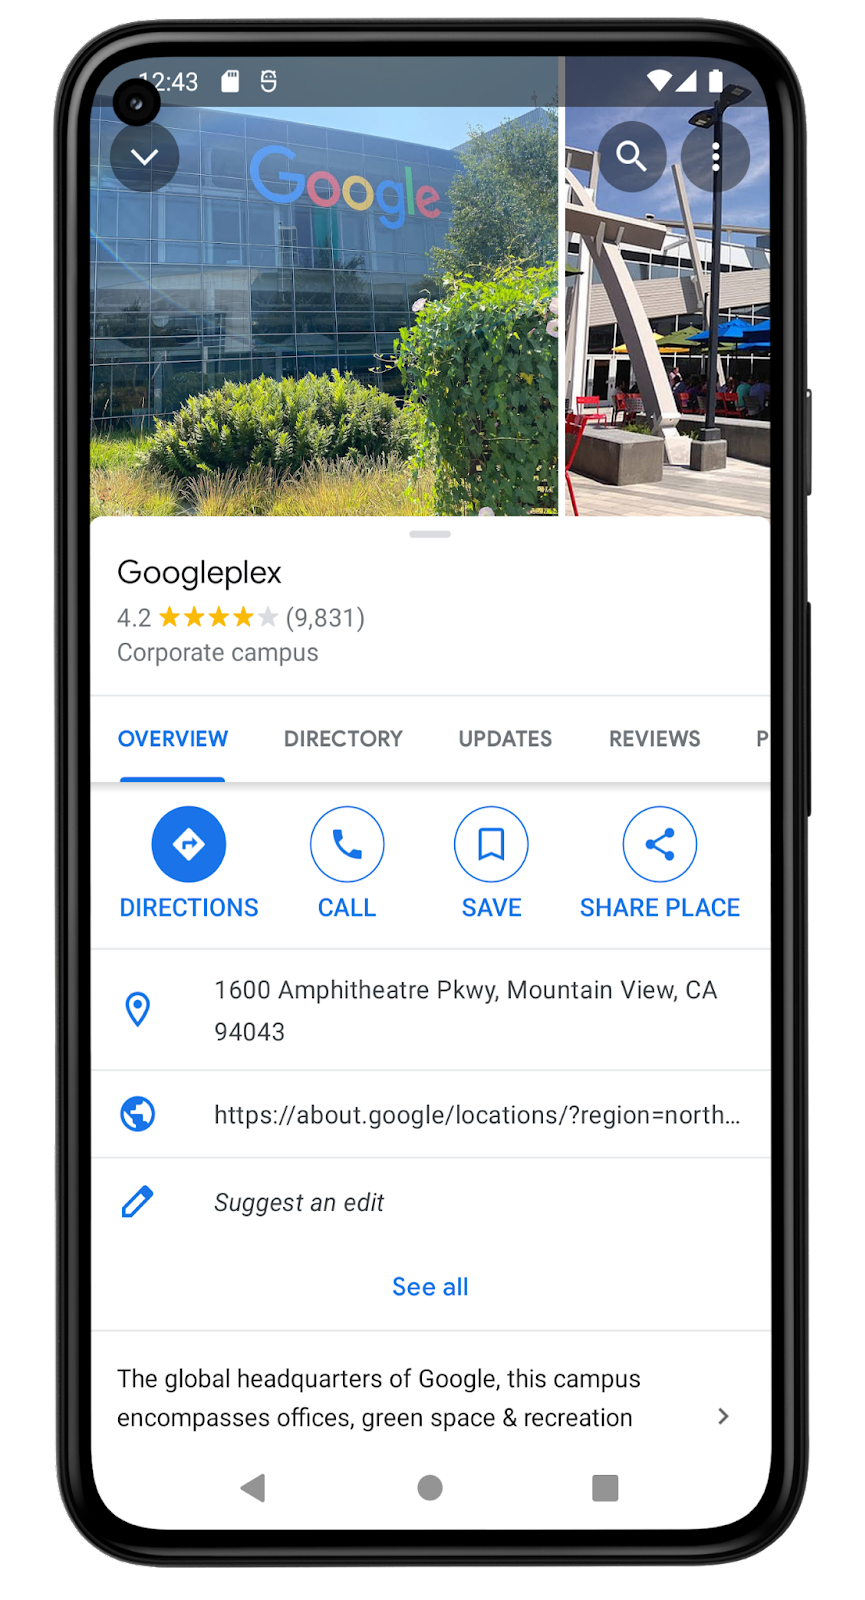 Ảnh chụp màn hình ứng dụng Google Maps này hiển thị thông tin về vị trí Googleplex. Đây là trụ sở một công ty, được mô tả là trụ sở chính của Google. Vị trí này có điểm xếp hạng 4,2 sao từ 9,831 bài đánh giá. Địa chỉ là 1600 Amphitheatre Pkwy, Mountain View, CA 94043. Trên màn hình có một tuỳ chọn cho phép người dùng lưu vị trí này trong danh sách của họ.